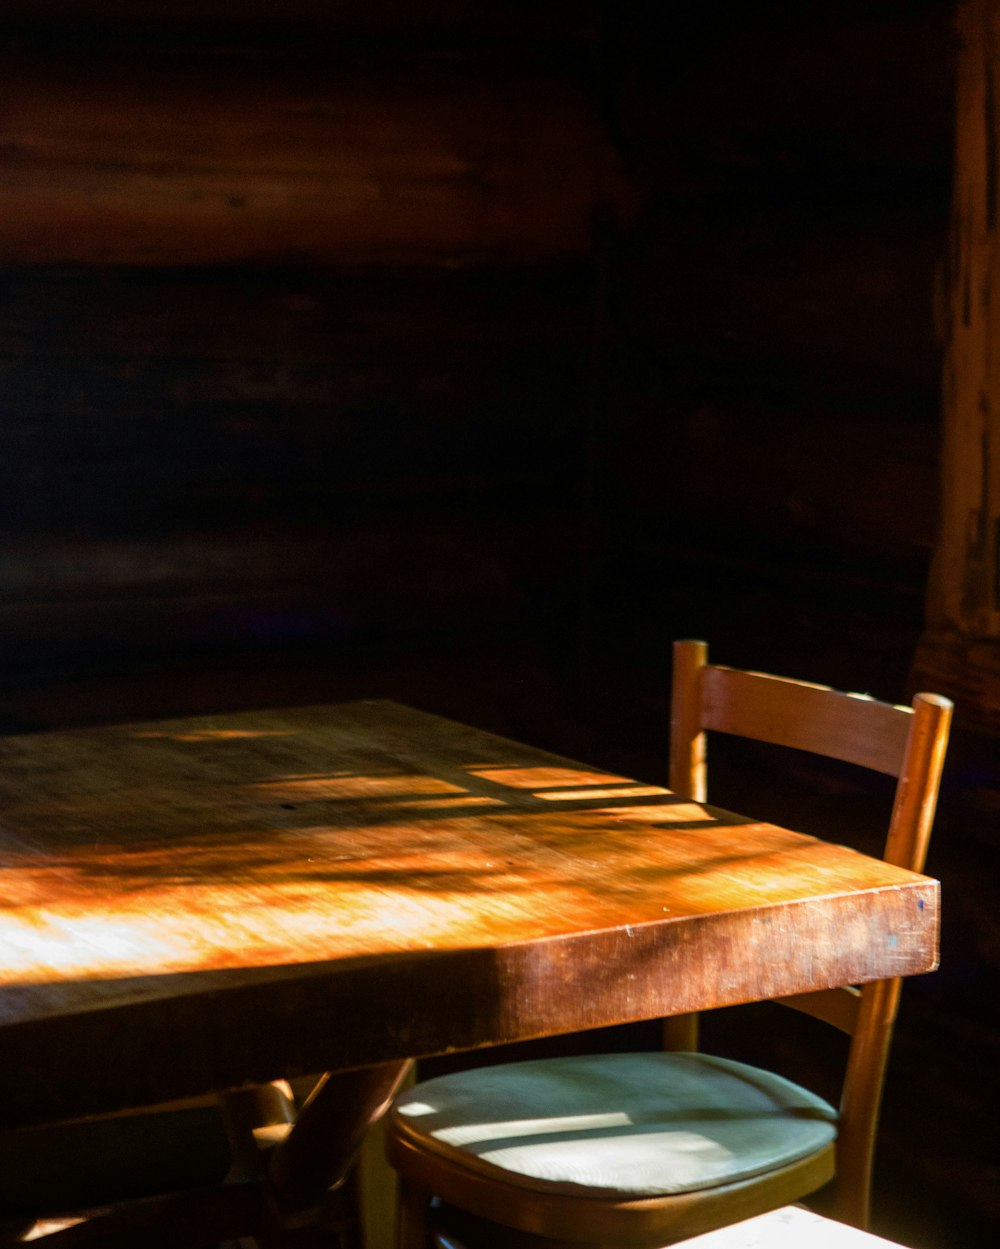 Table en bois marron avec chaises